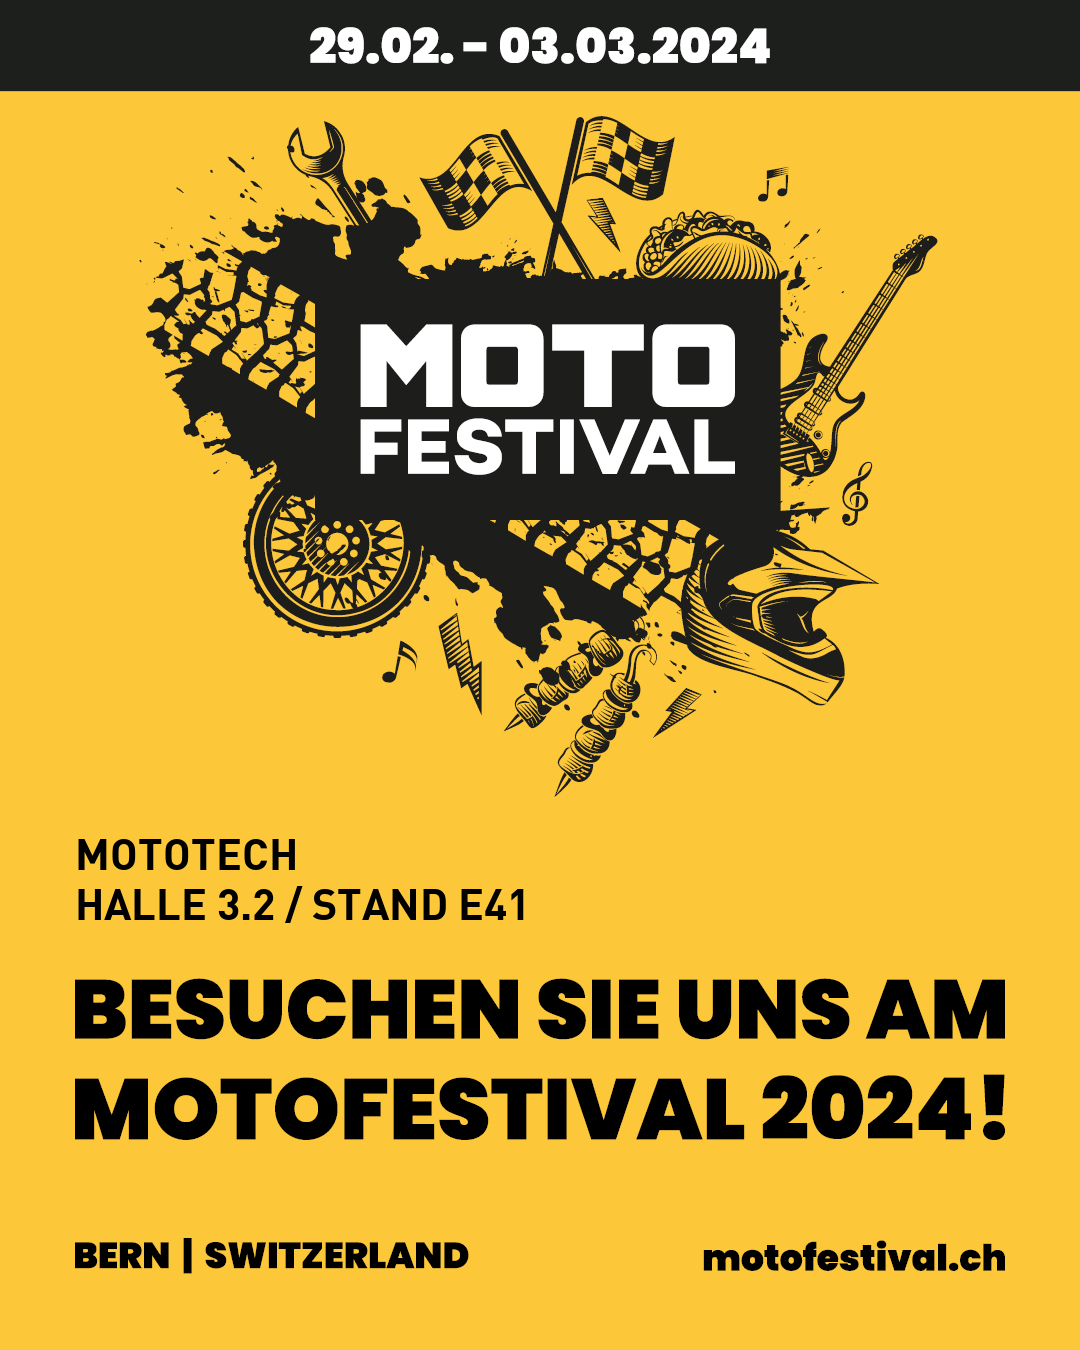 Motofestival in Bern!